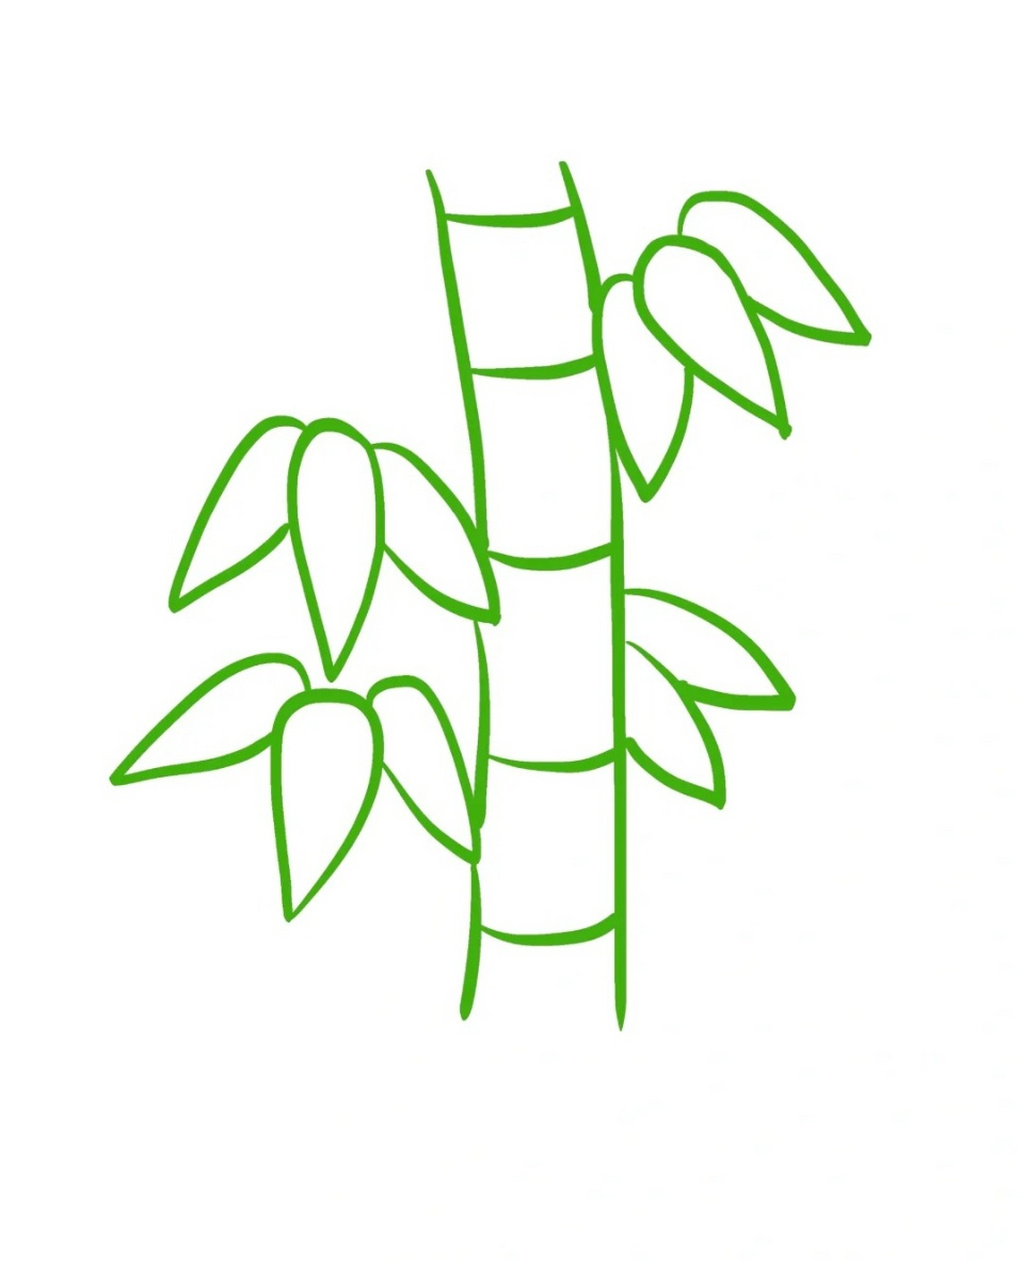 竹子简笔画  96竹子,四季常青,挺拔坚韧,是一种深受人们喜爱的植物